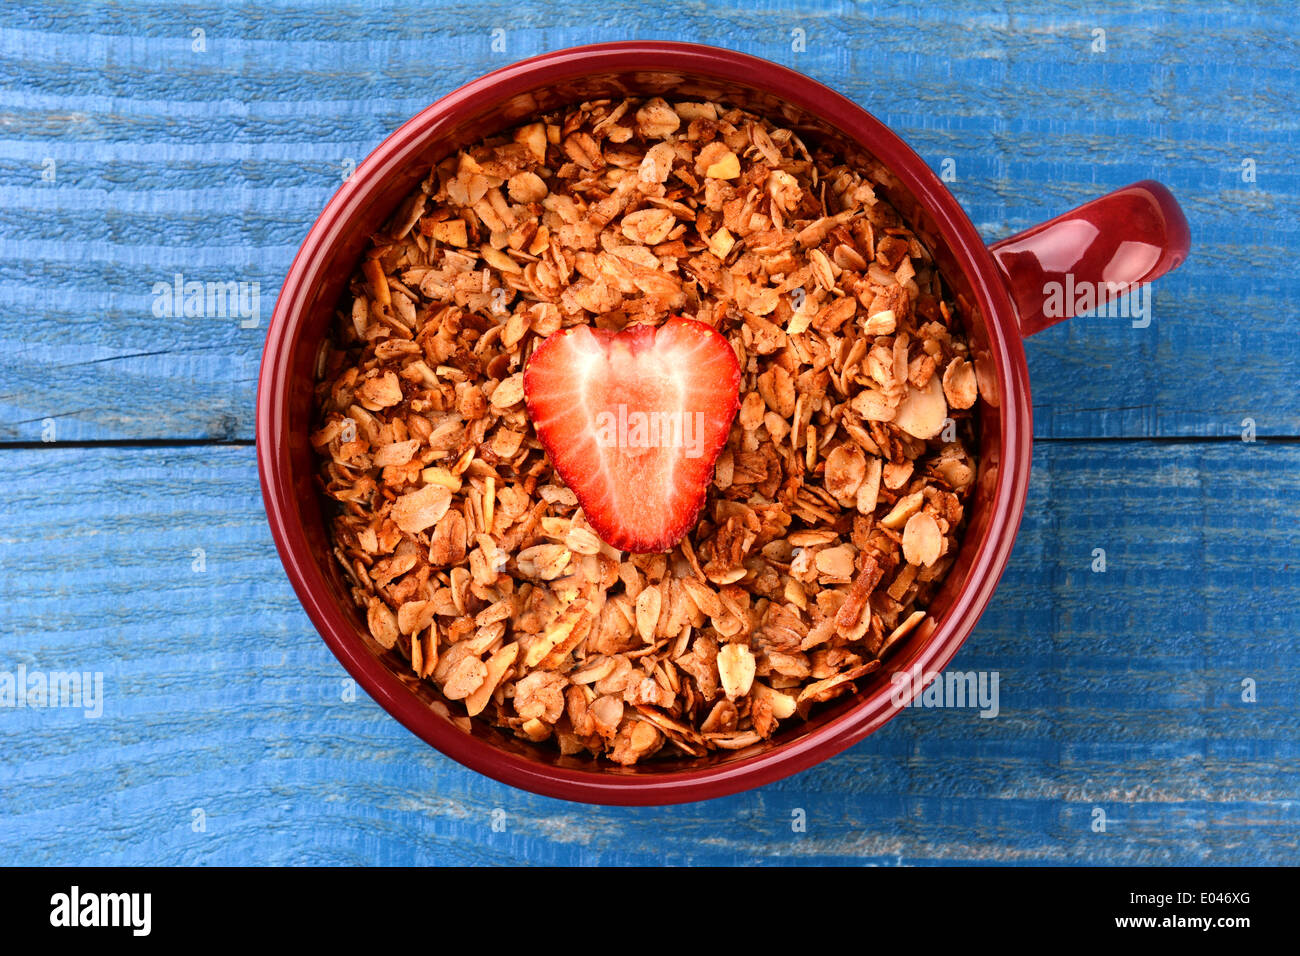 Alta angolazione di una tazza grande riempita con una sana grano intero a base di cereali con un singolo di fragole a fette nel mezzo. Foto Stock